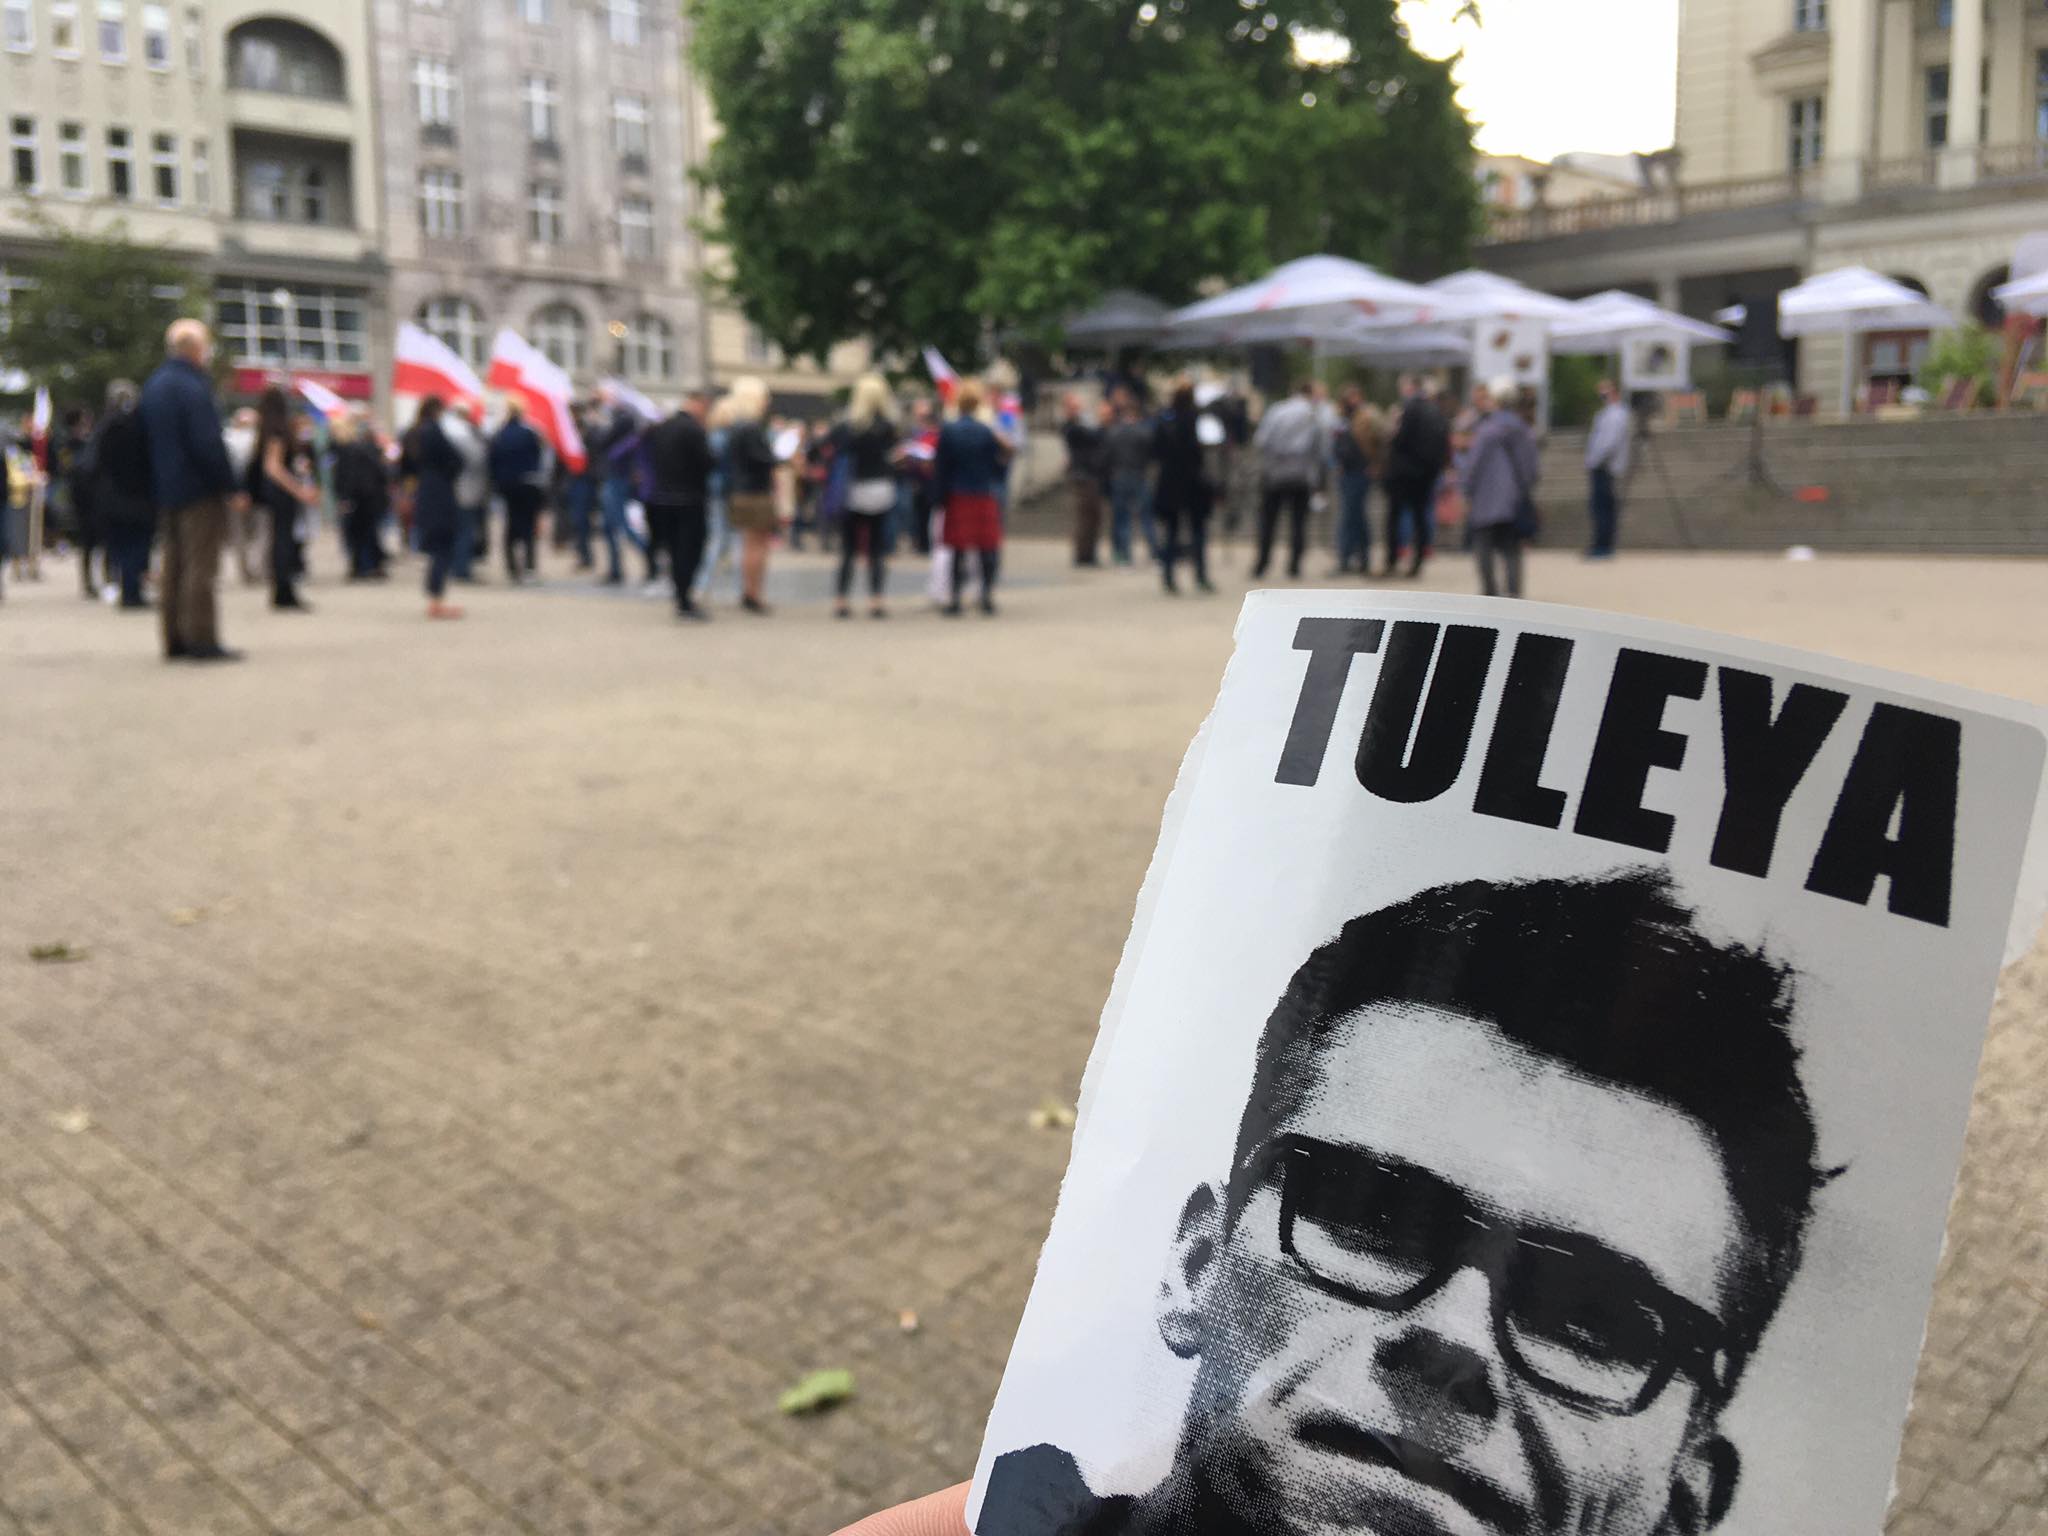 Akcja poparcia dla sędziego Tuleyi na poznańskim placu Wolności - Jacek Butlewski